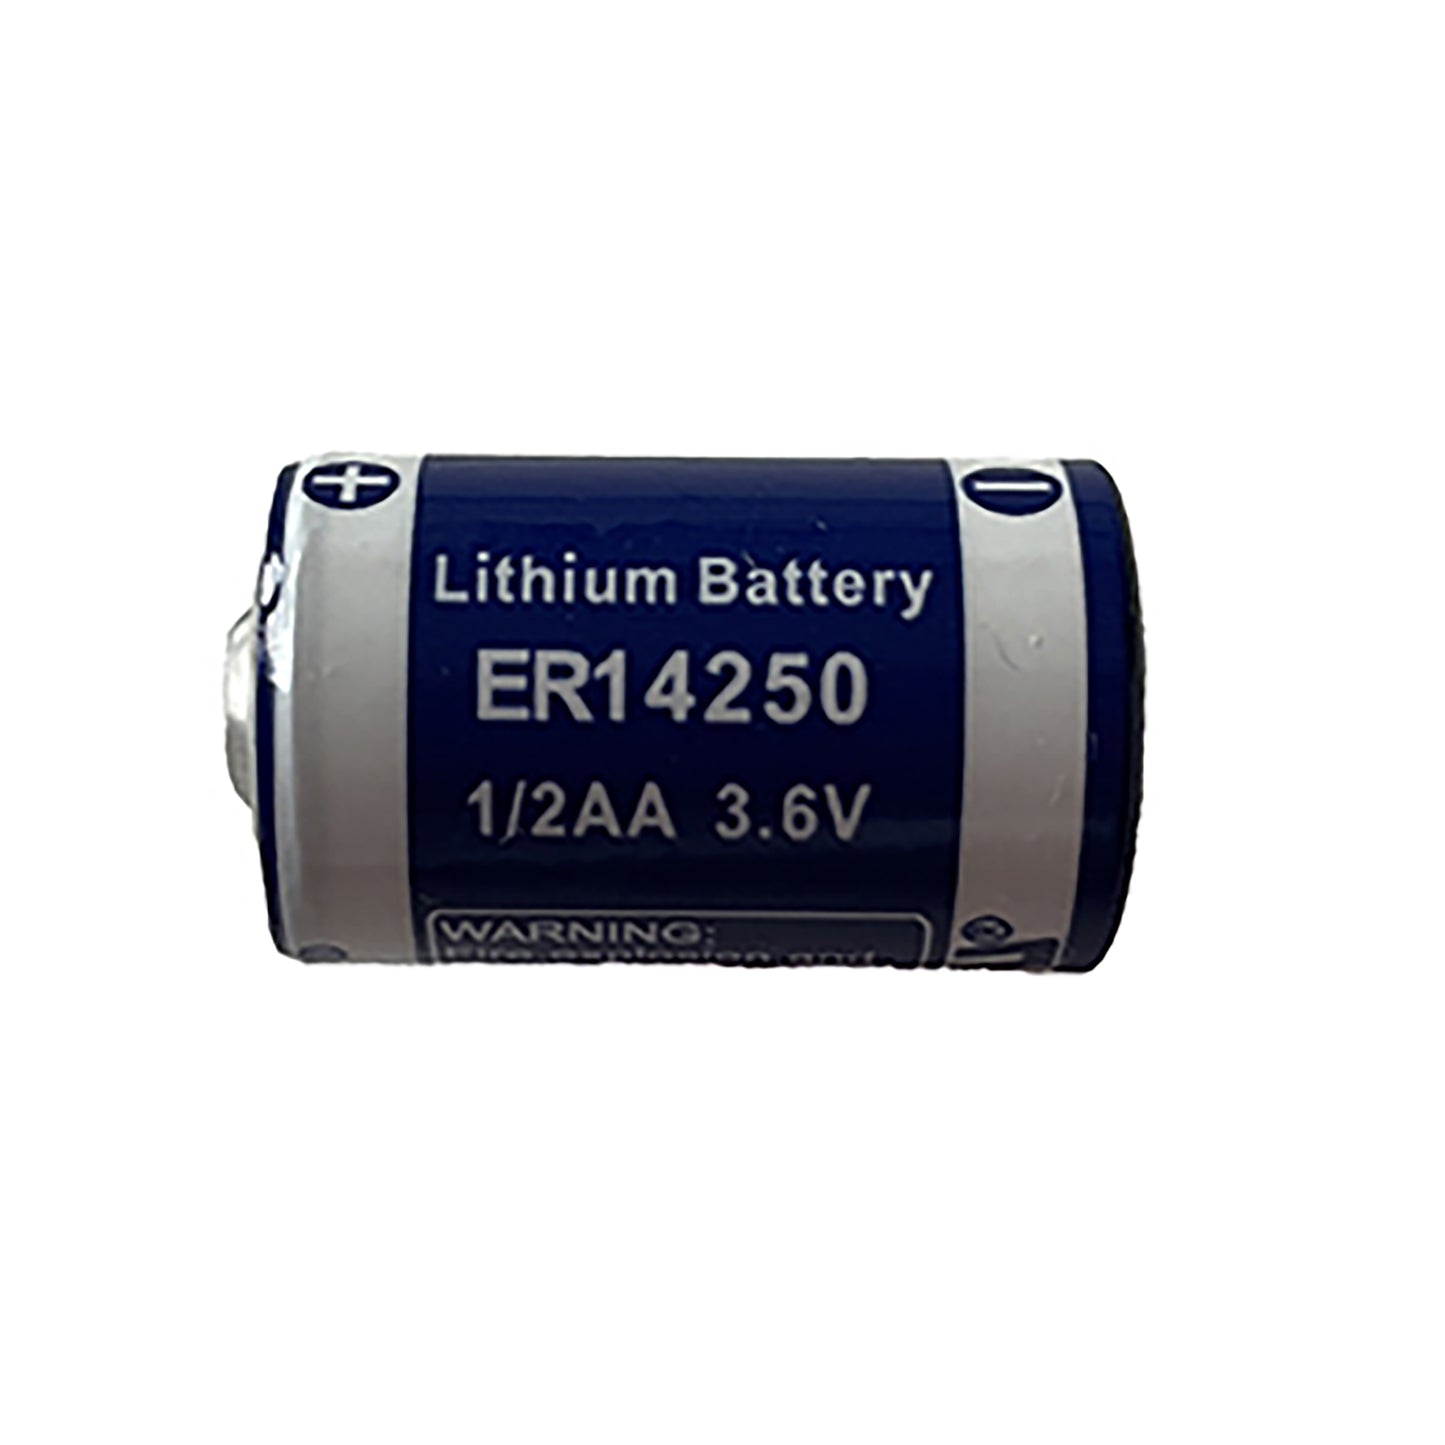 EWT-ER14250 - литиевая батарейка EWT ER14250, 1/2AA, 3.6 В